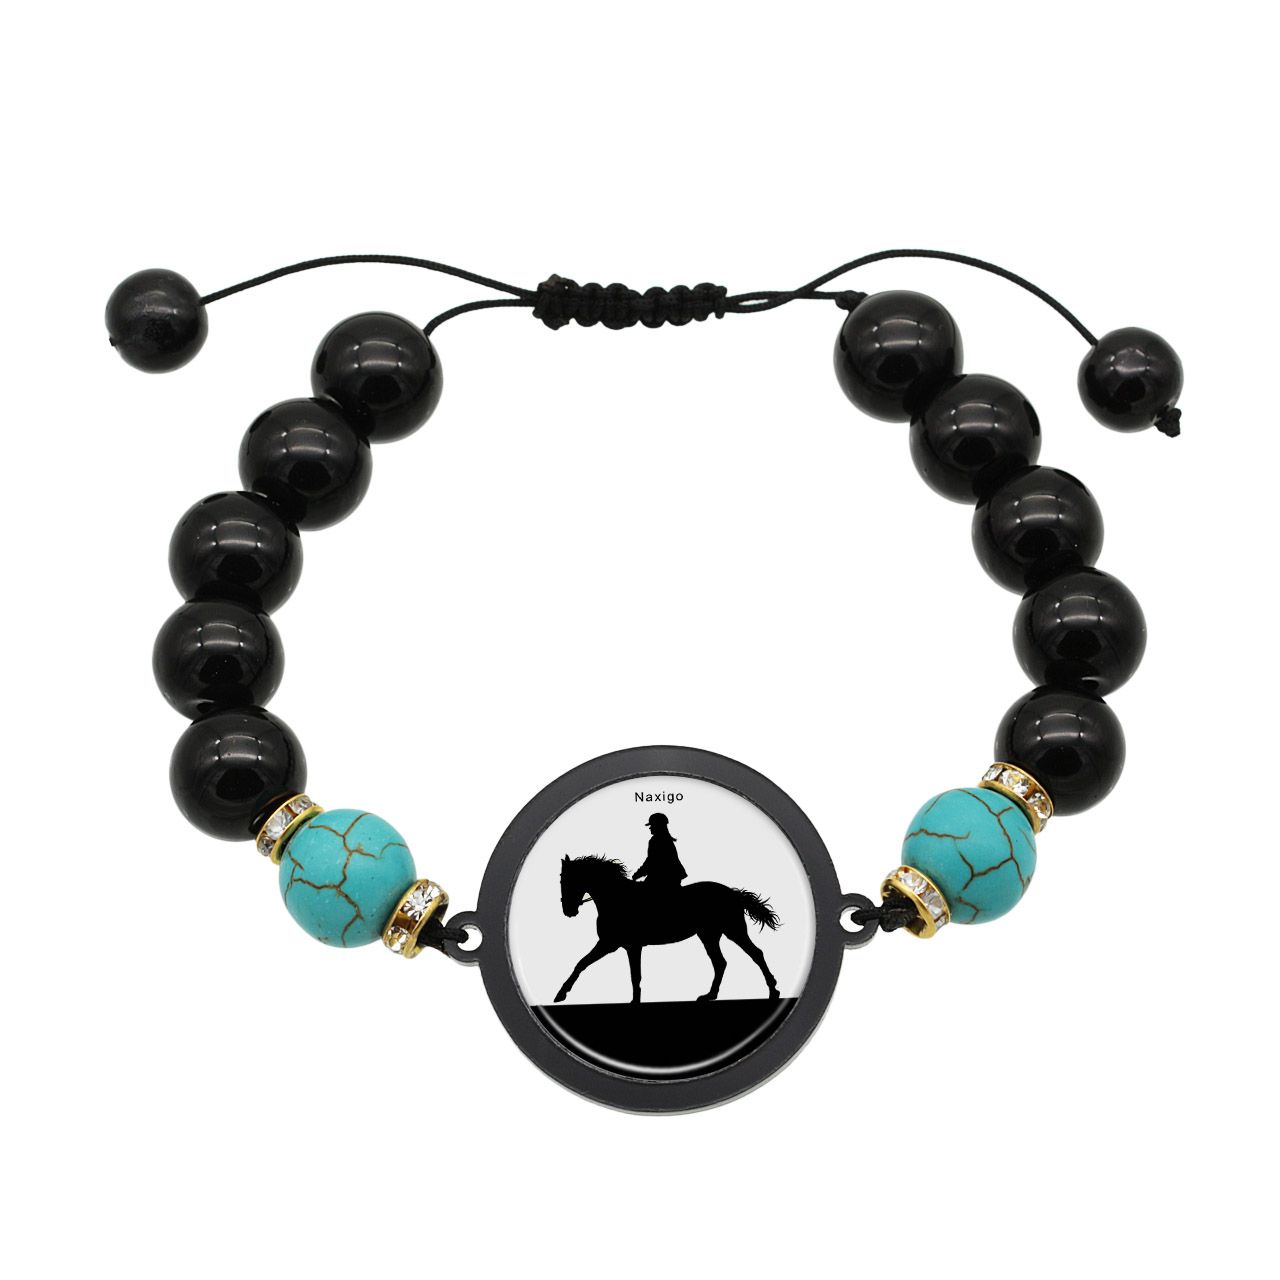 دستبند زنانه ناکسیگو طرح اسب سواری کد BR4011 -  - 1